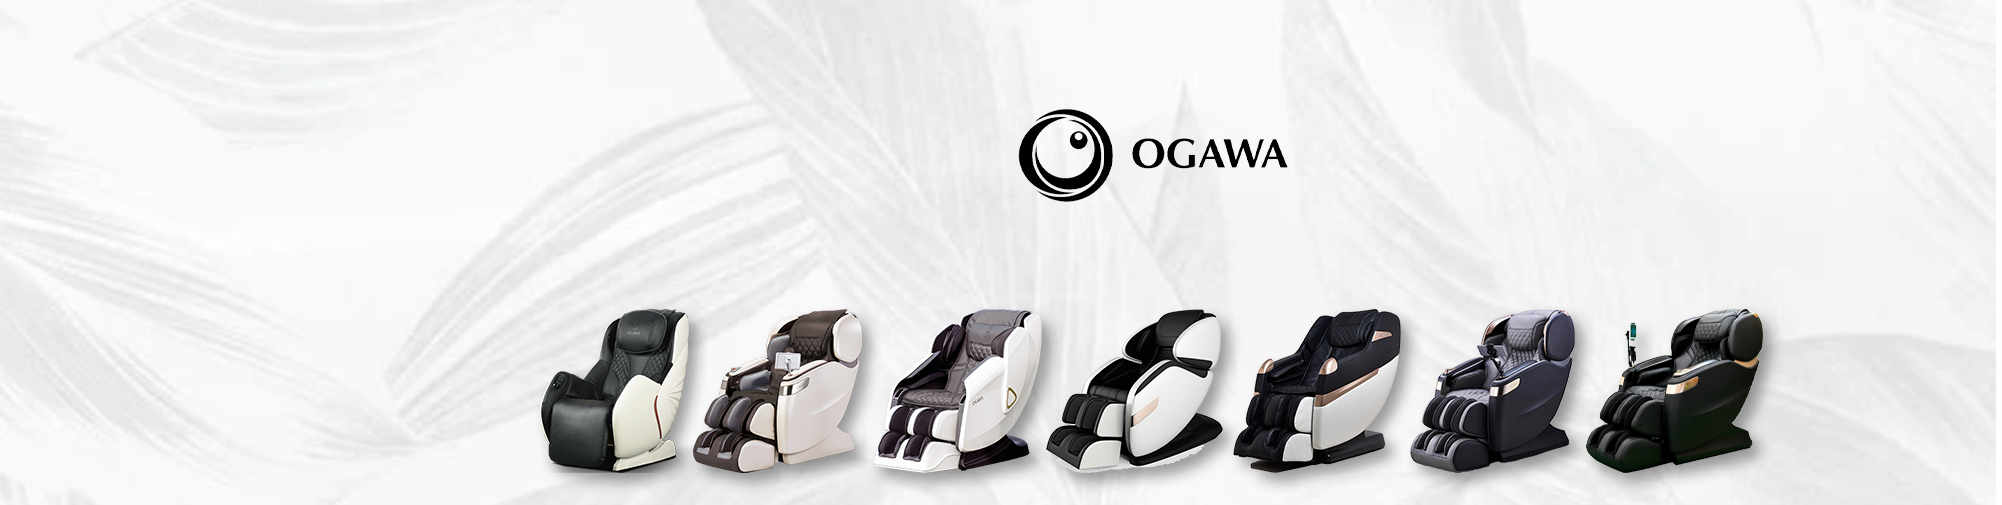 OGAWA | Світ масажних крісел